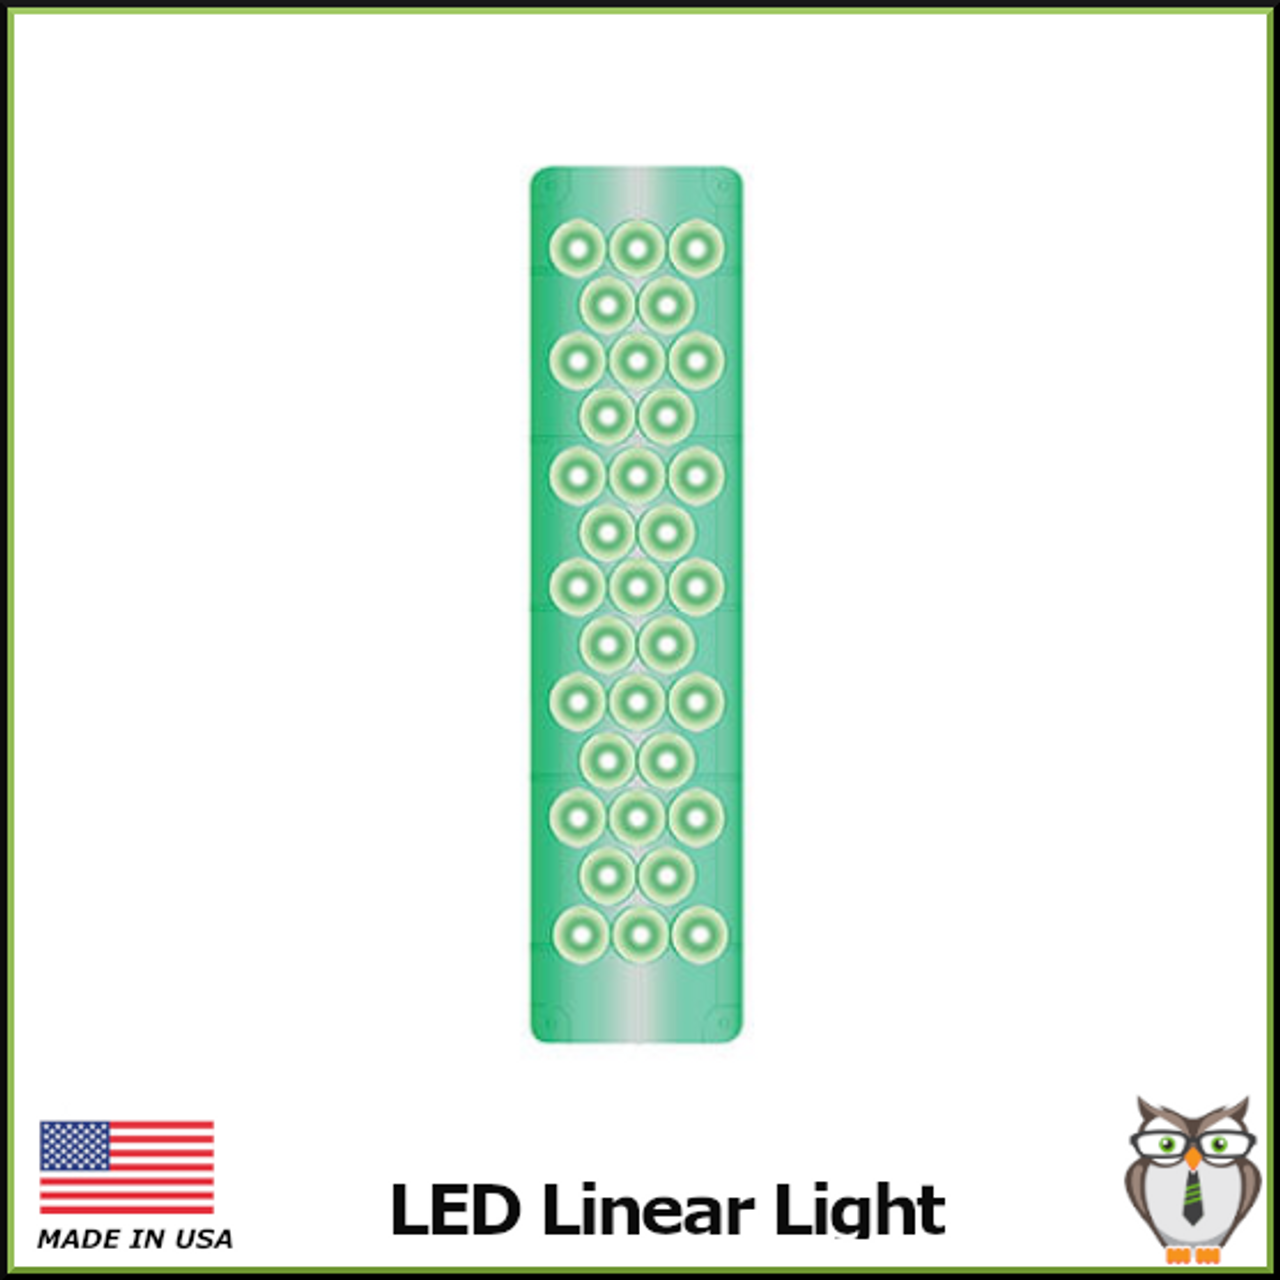 LED Linear Light - Green "Go"